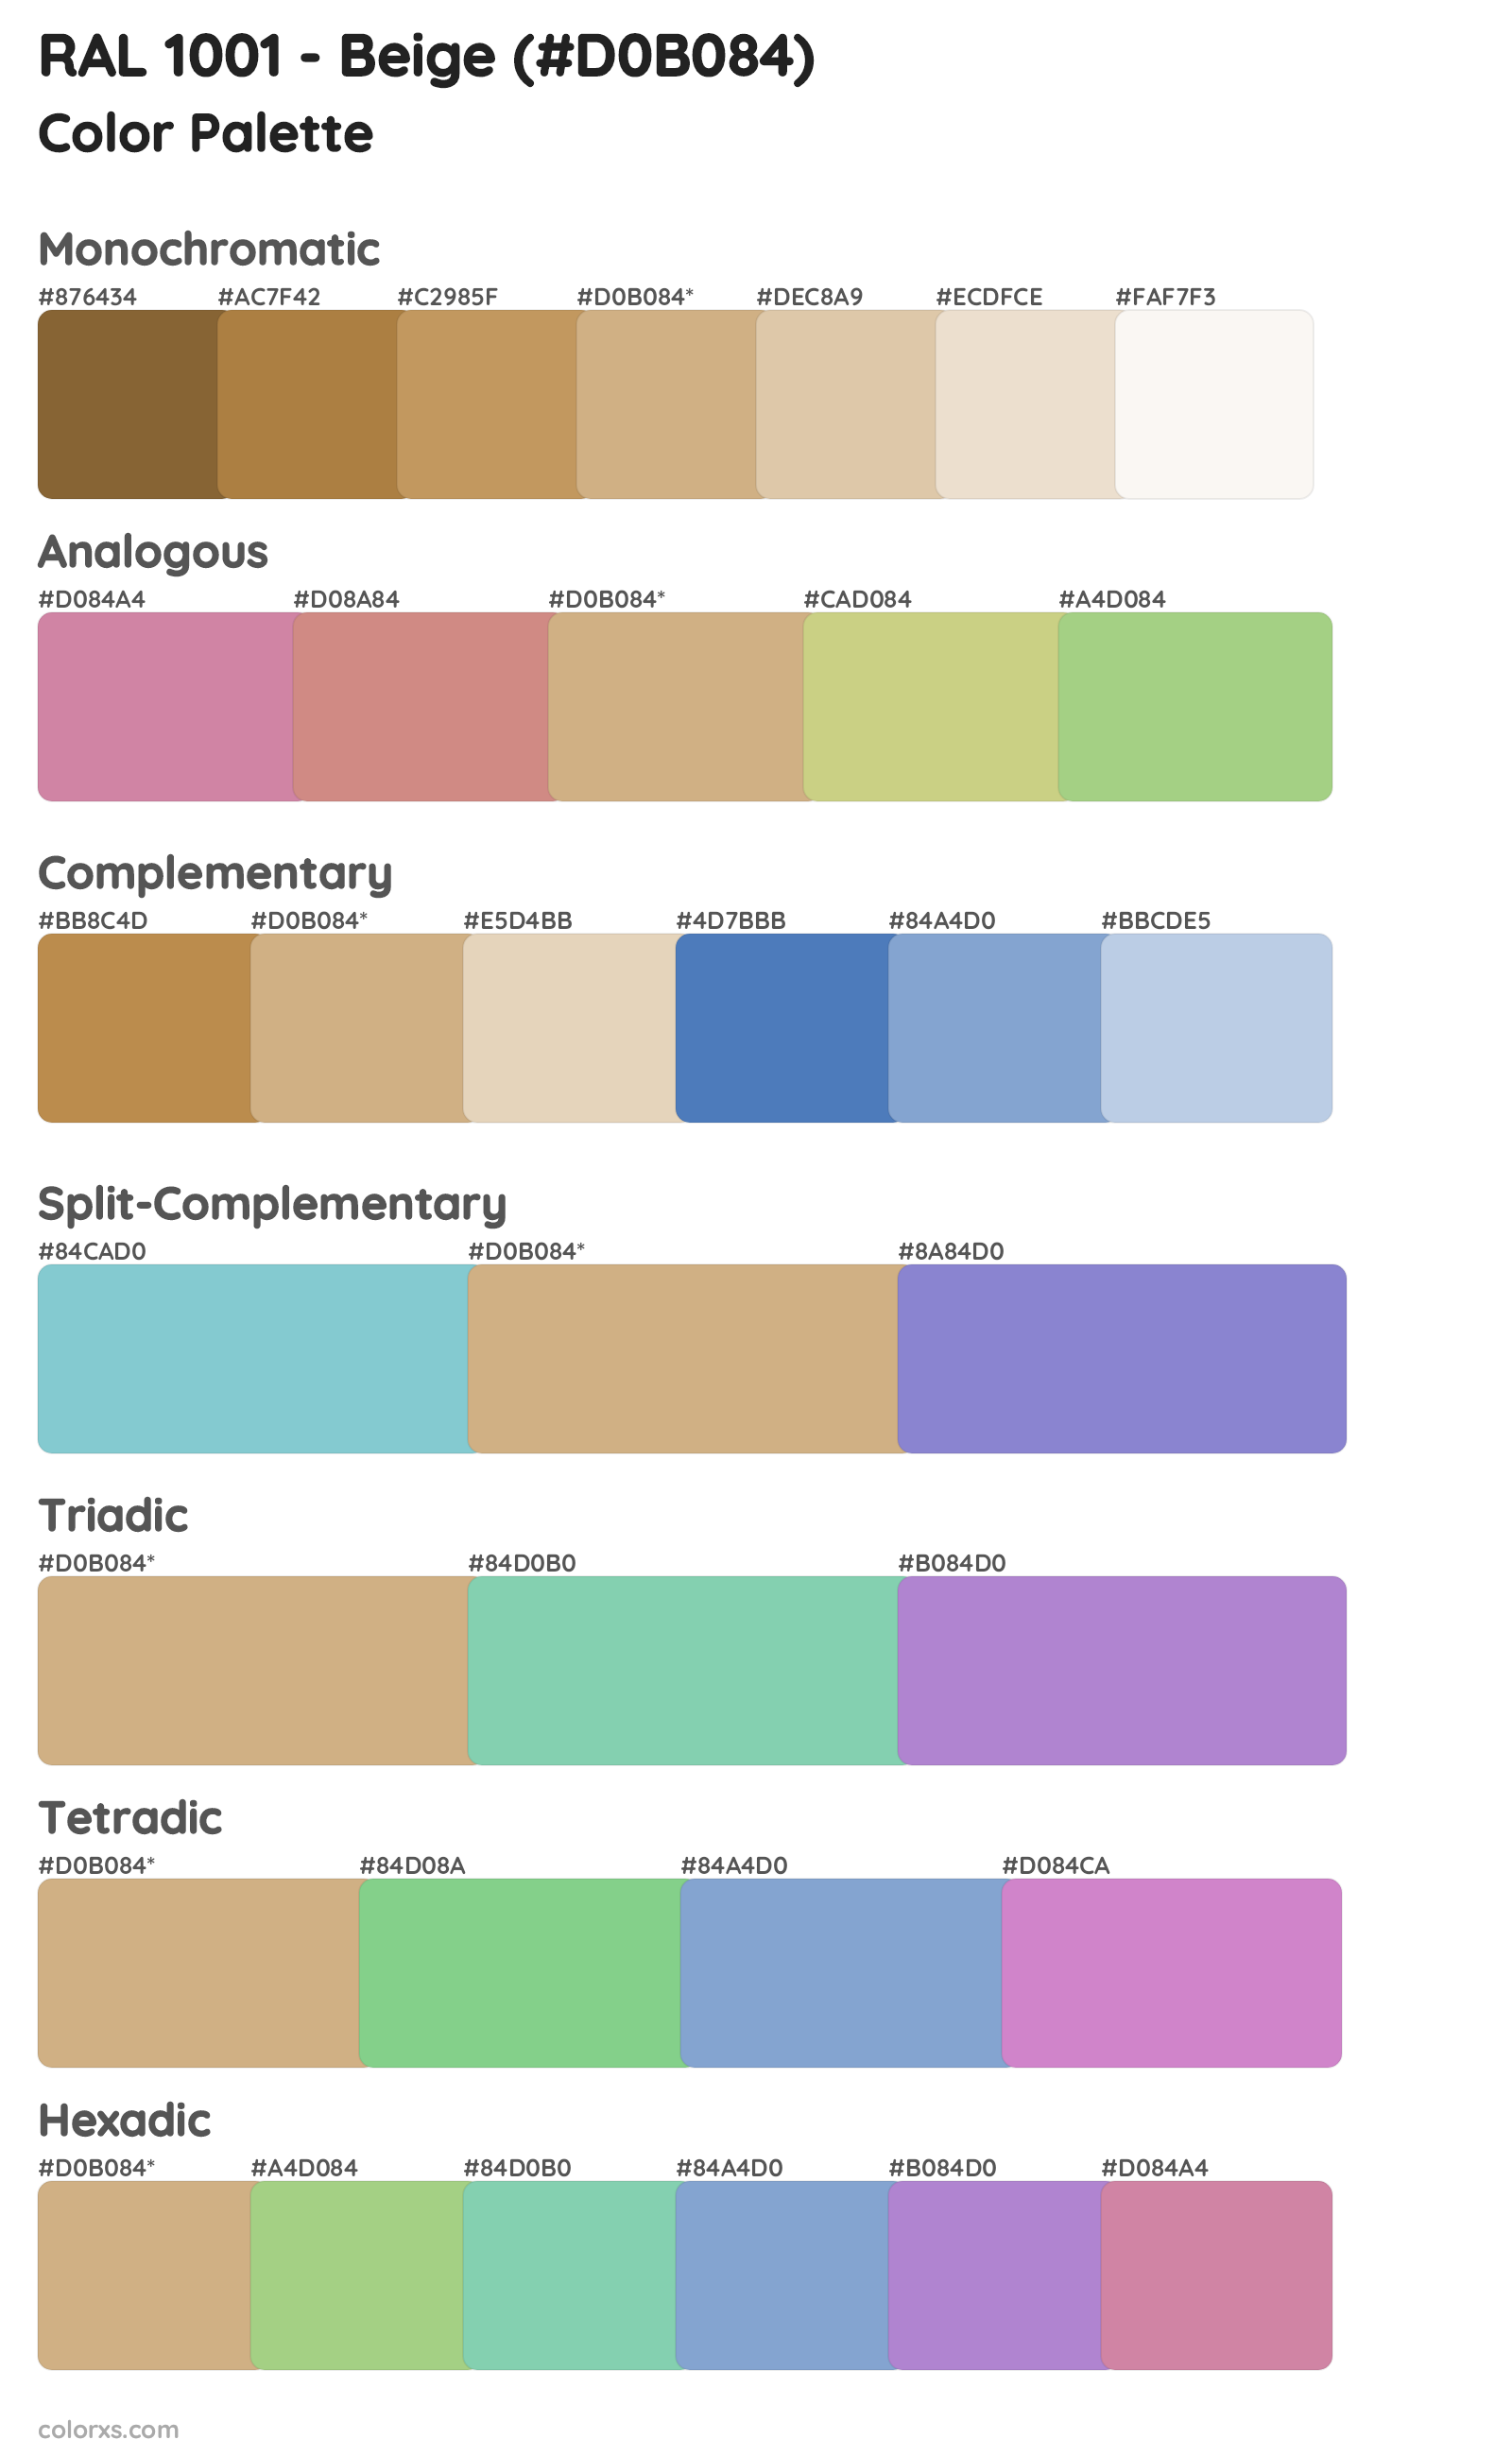 RAL 1001 - Beige Color Scheme Palettes